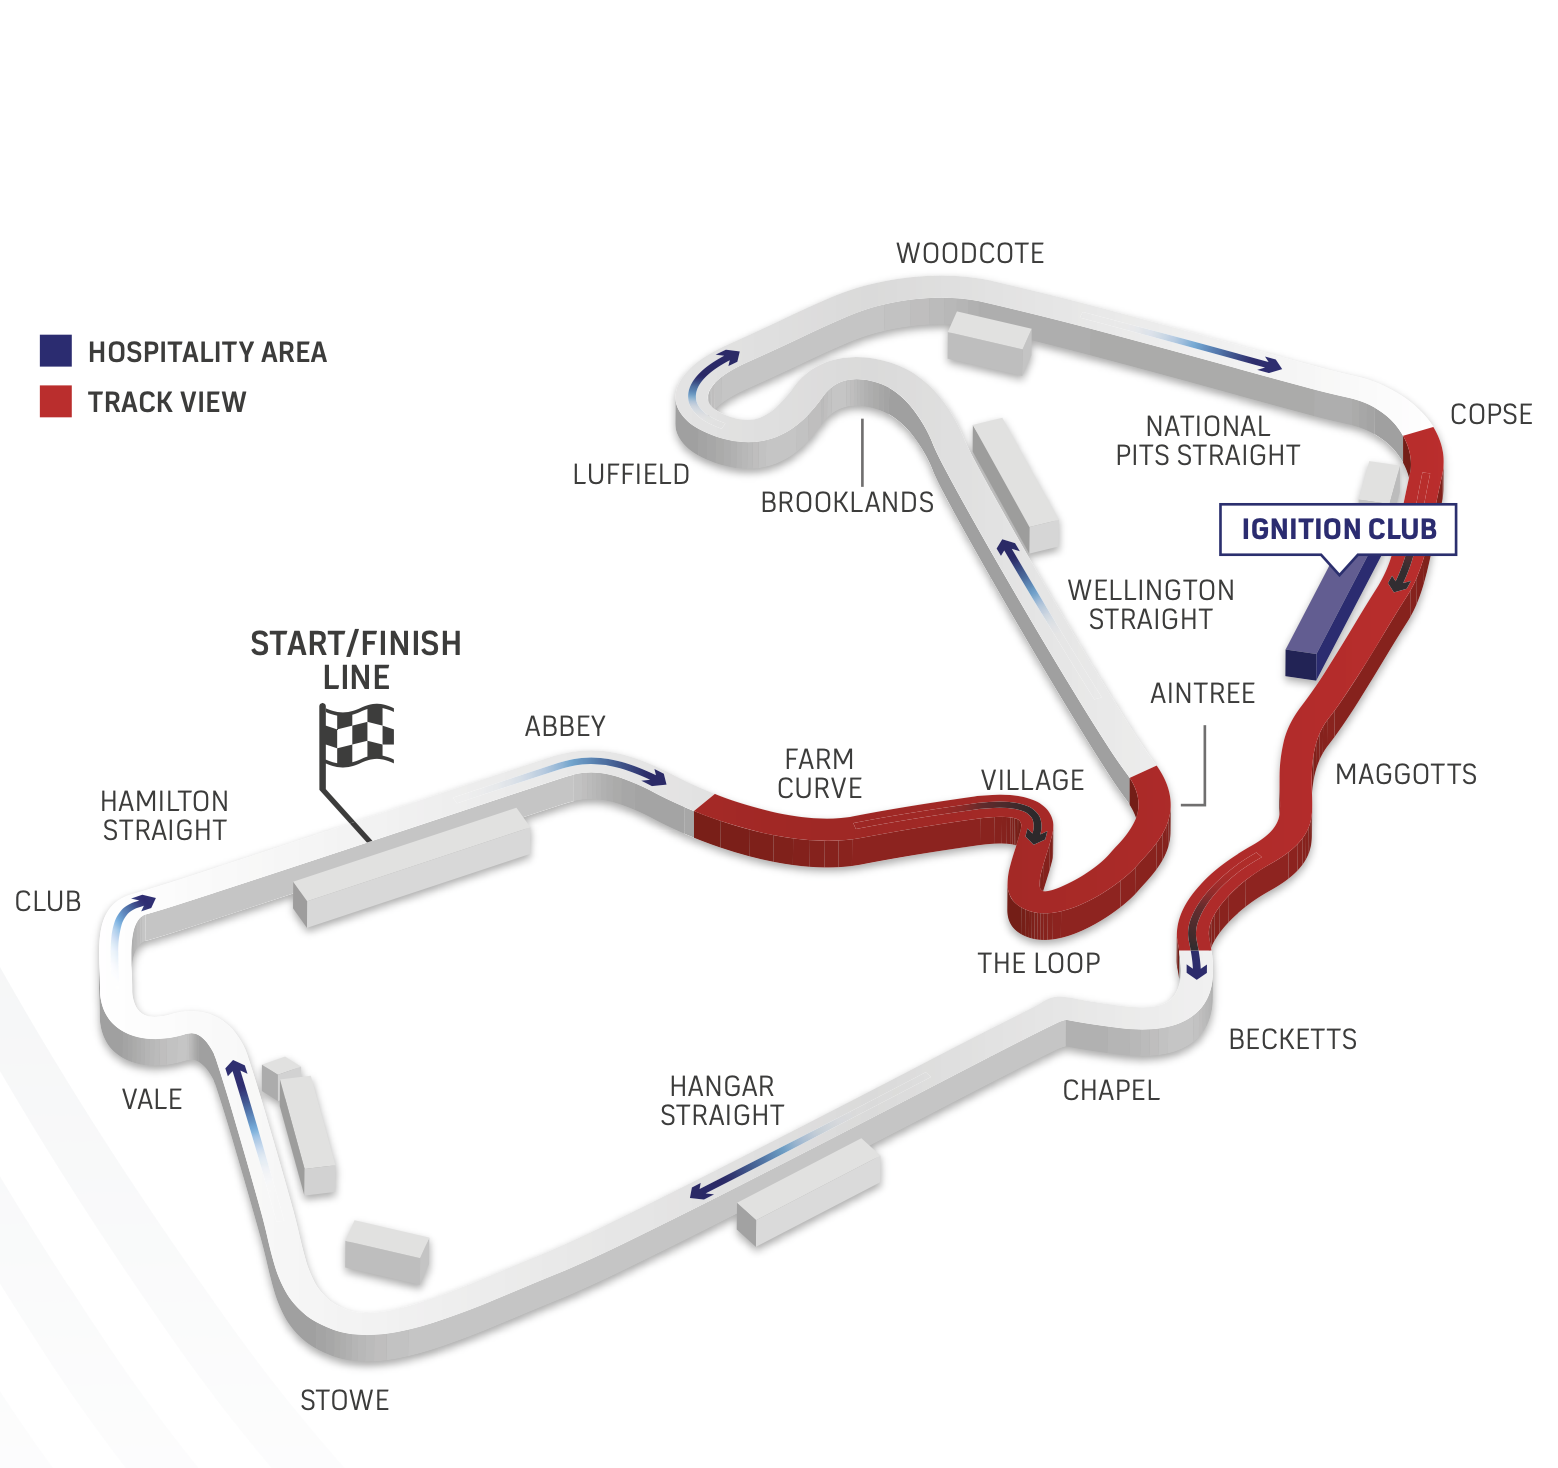 Silverstone Grand Prix 2022